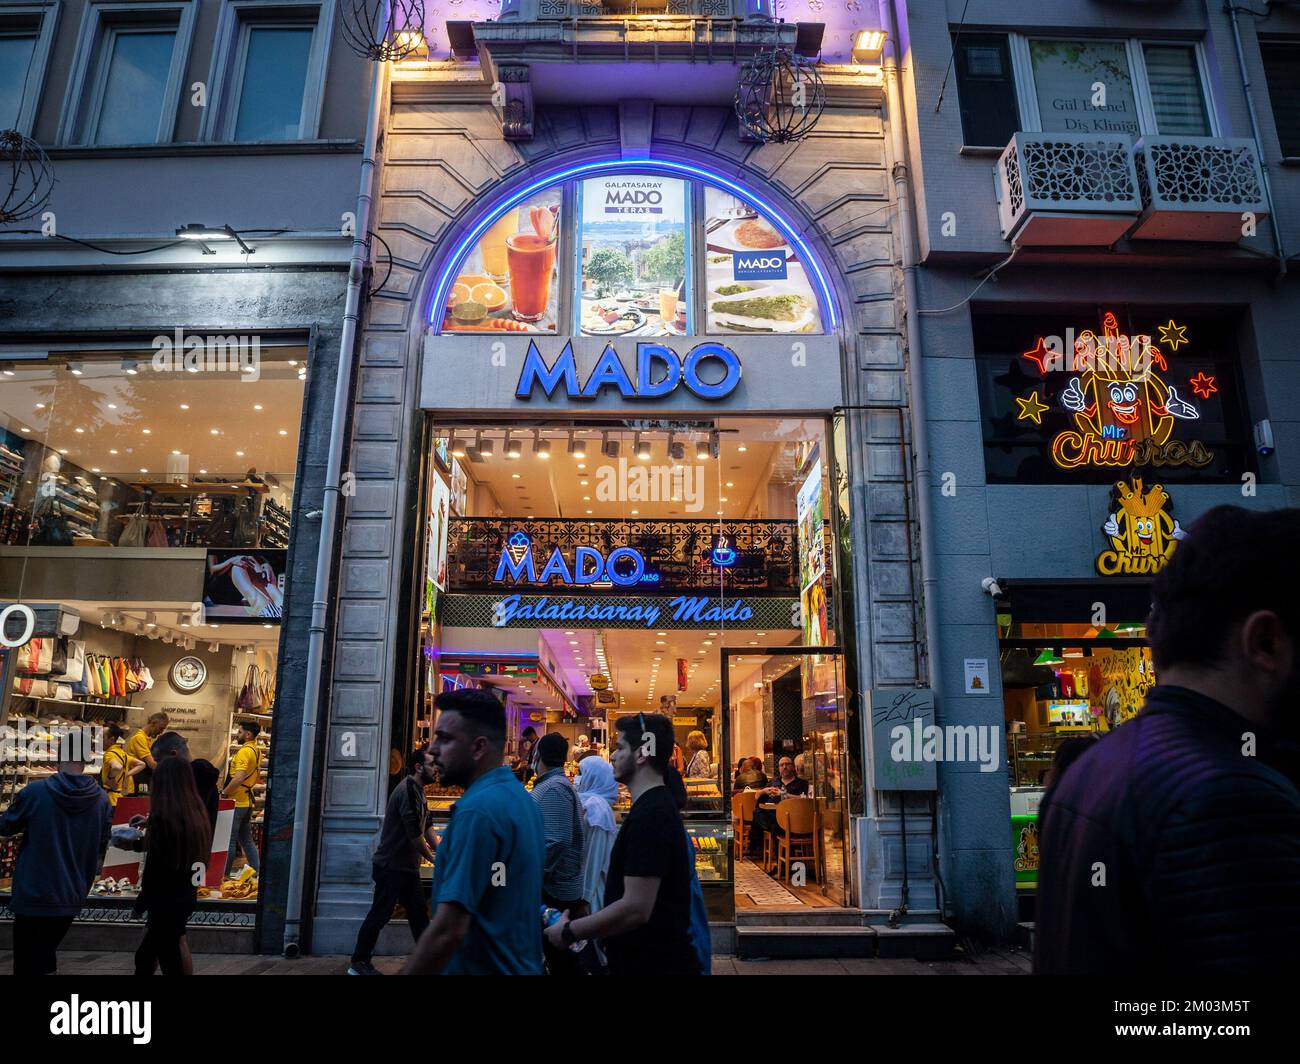 Imagen de un cartel con el logotipo de Mado en Estambul, Turquía. MADO es una marca de helados y pastelería turca que tiene alrededor de 300 establecimientos en Turquía y 22 Foto de stock